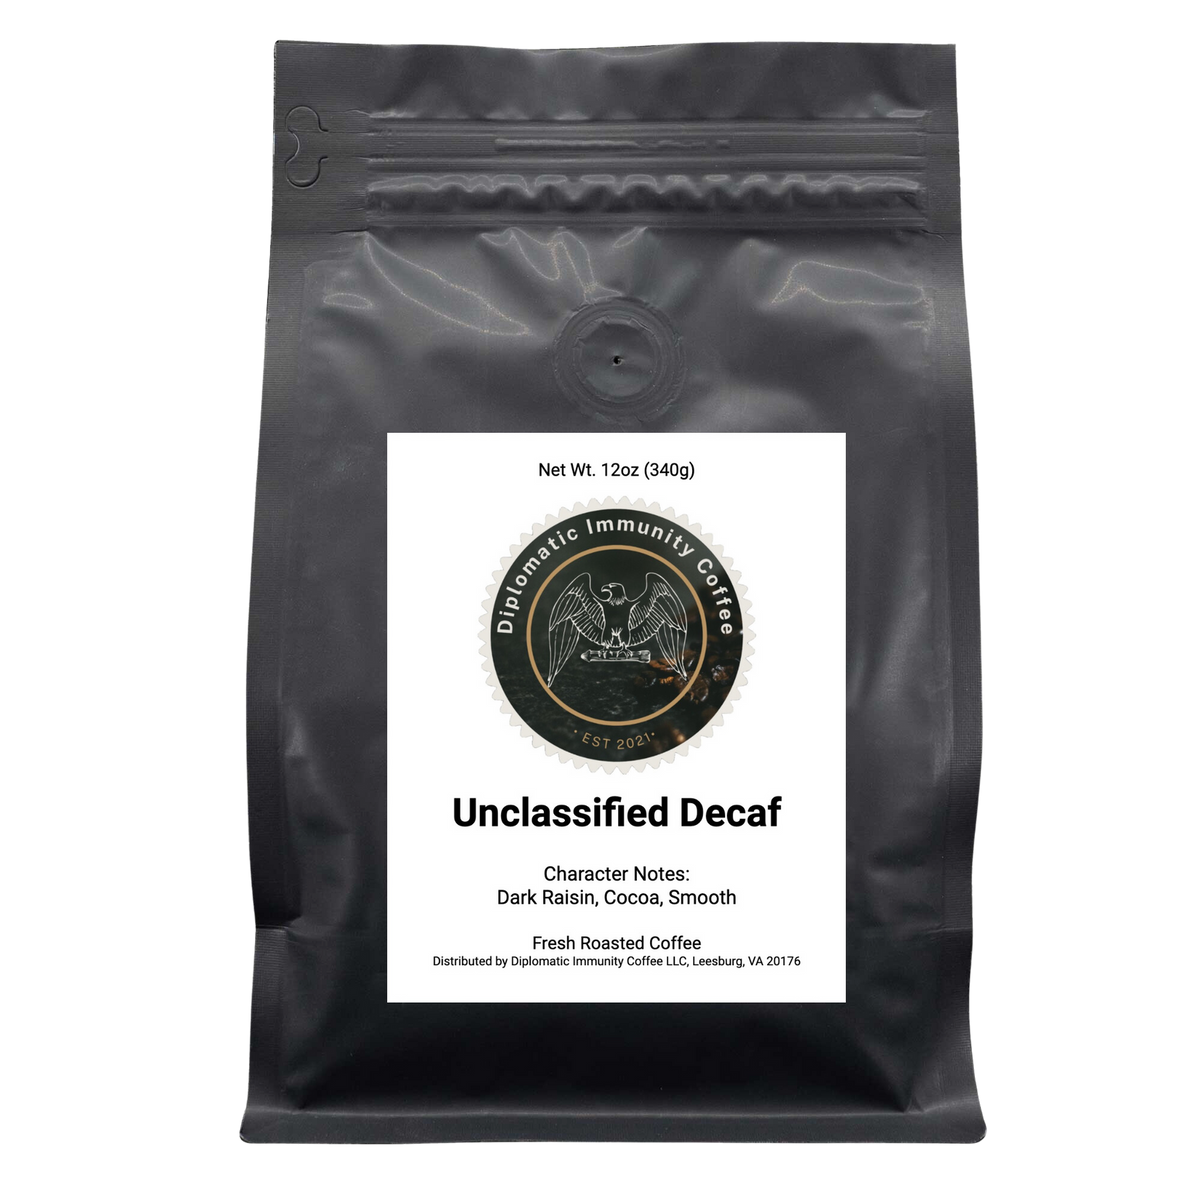 UNCLASSIFIED DECAF - Medium Dark Roast - Country: Colombia - Flavor Notes: Dark Raisin, Cocoa, Smooth